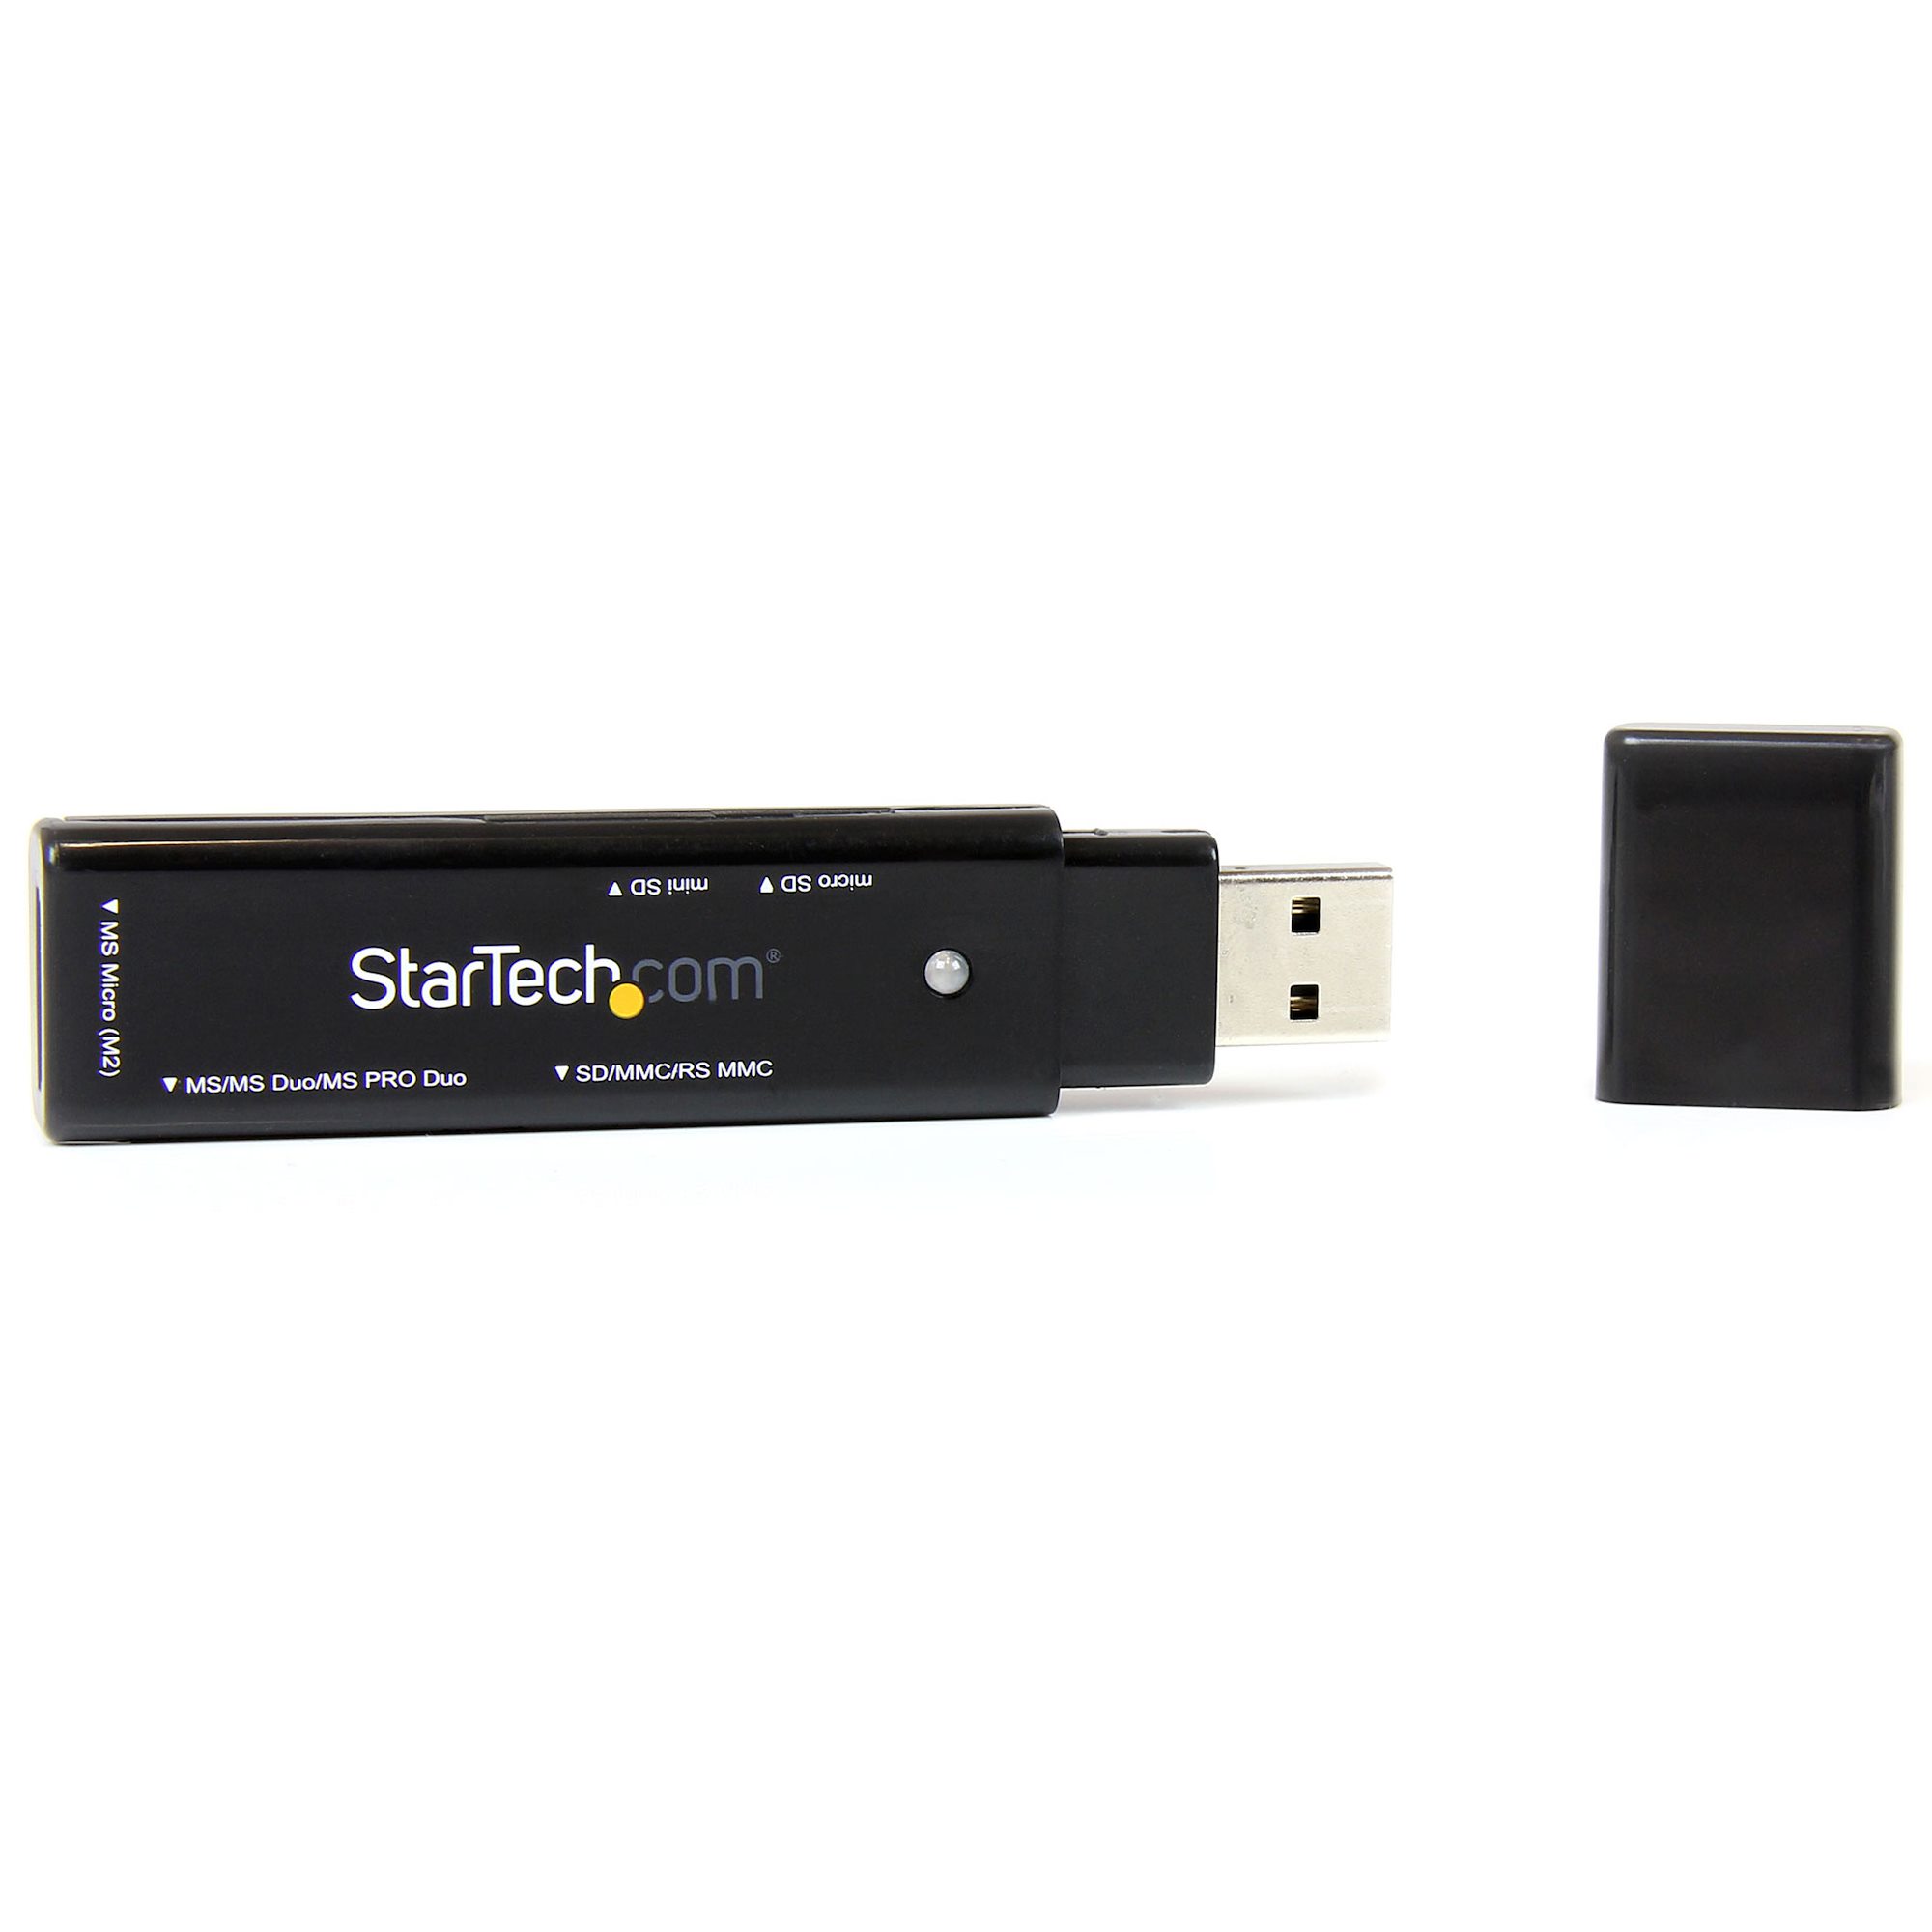 USB Media Memory Card Reader - USB Card Readers | StarTech.com